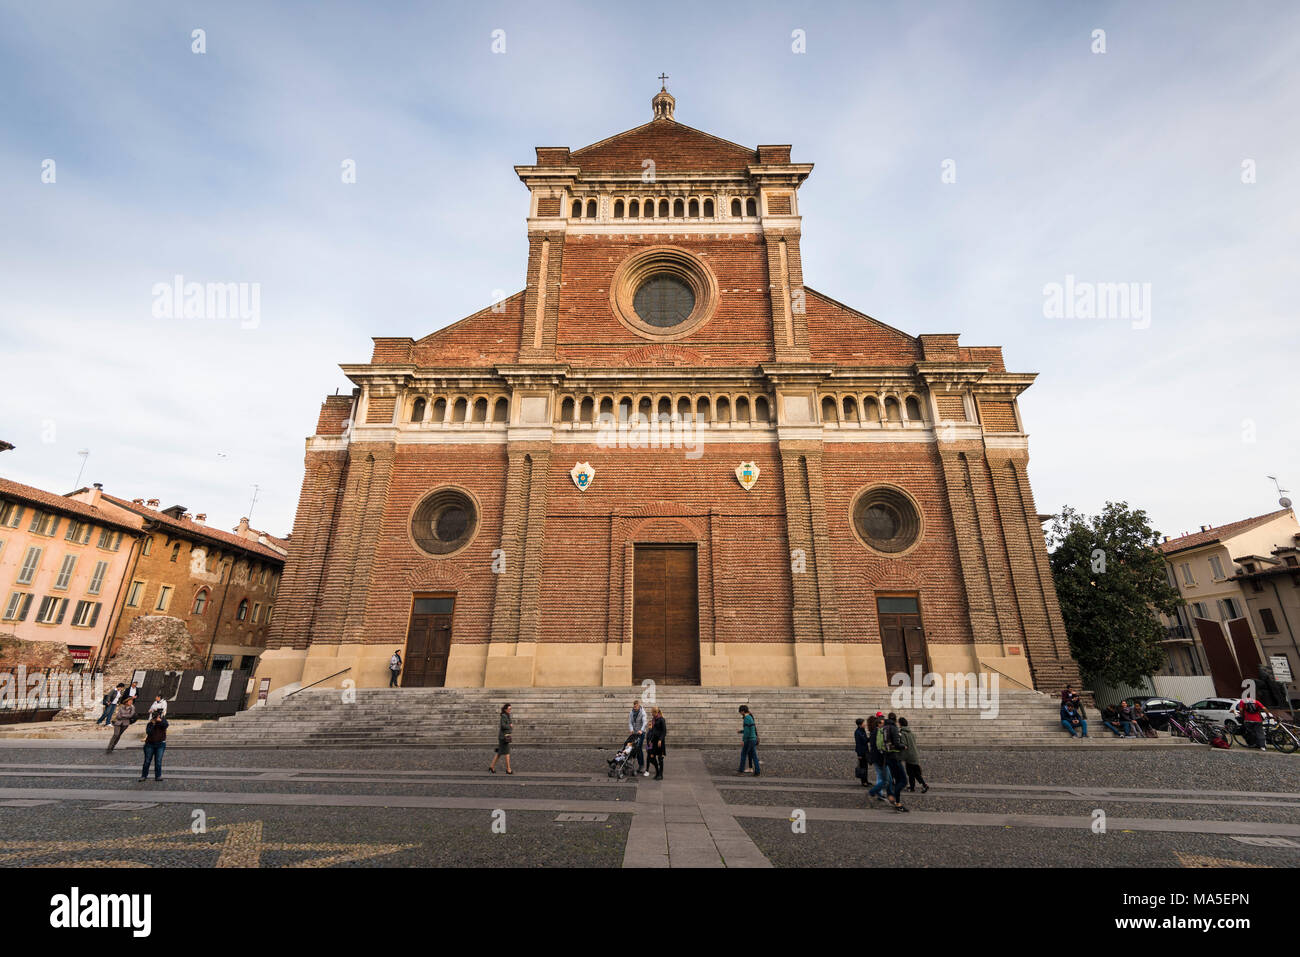 The Dome of Pavia, Lombardia, Italy Stock Photo